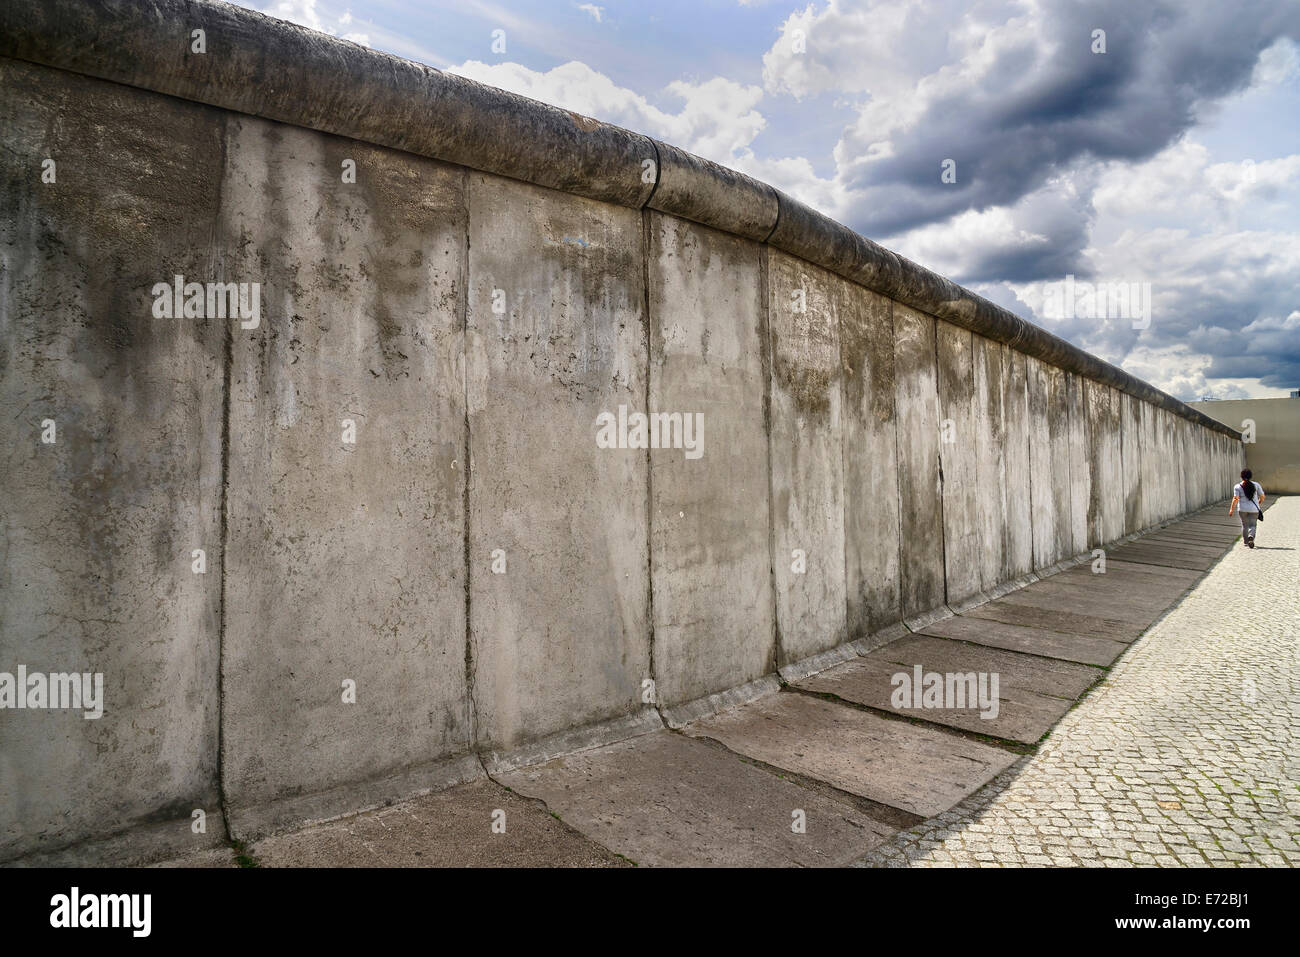 Allemagne, Berlin, Gedenkstatte Berliner Mauer, également connu sous le nom de Mémorial du Mur de Berlin Exposition au mémorial de la Bernauer Strasse contient le dernier morceau de mur de Berlin qui a conservé le motif de la bande frontalière affiche derrière elle. Banque D'Images